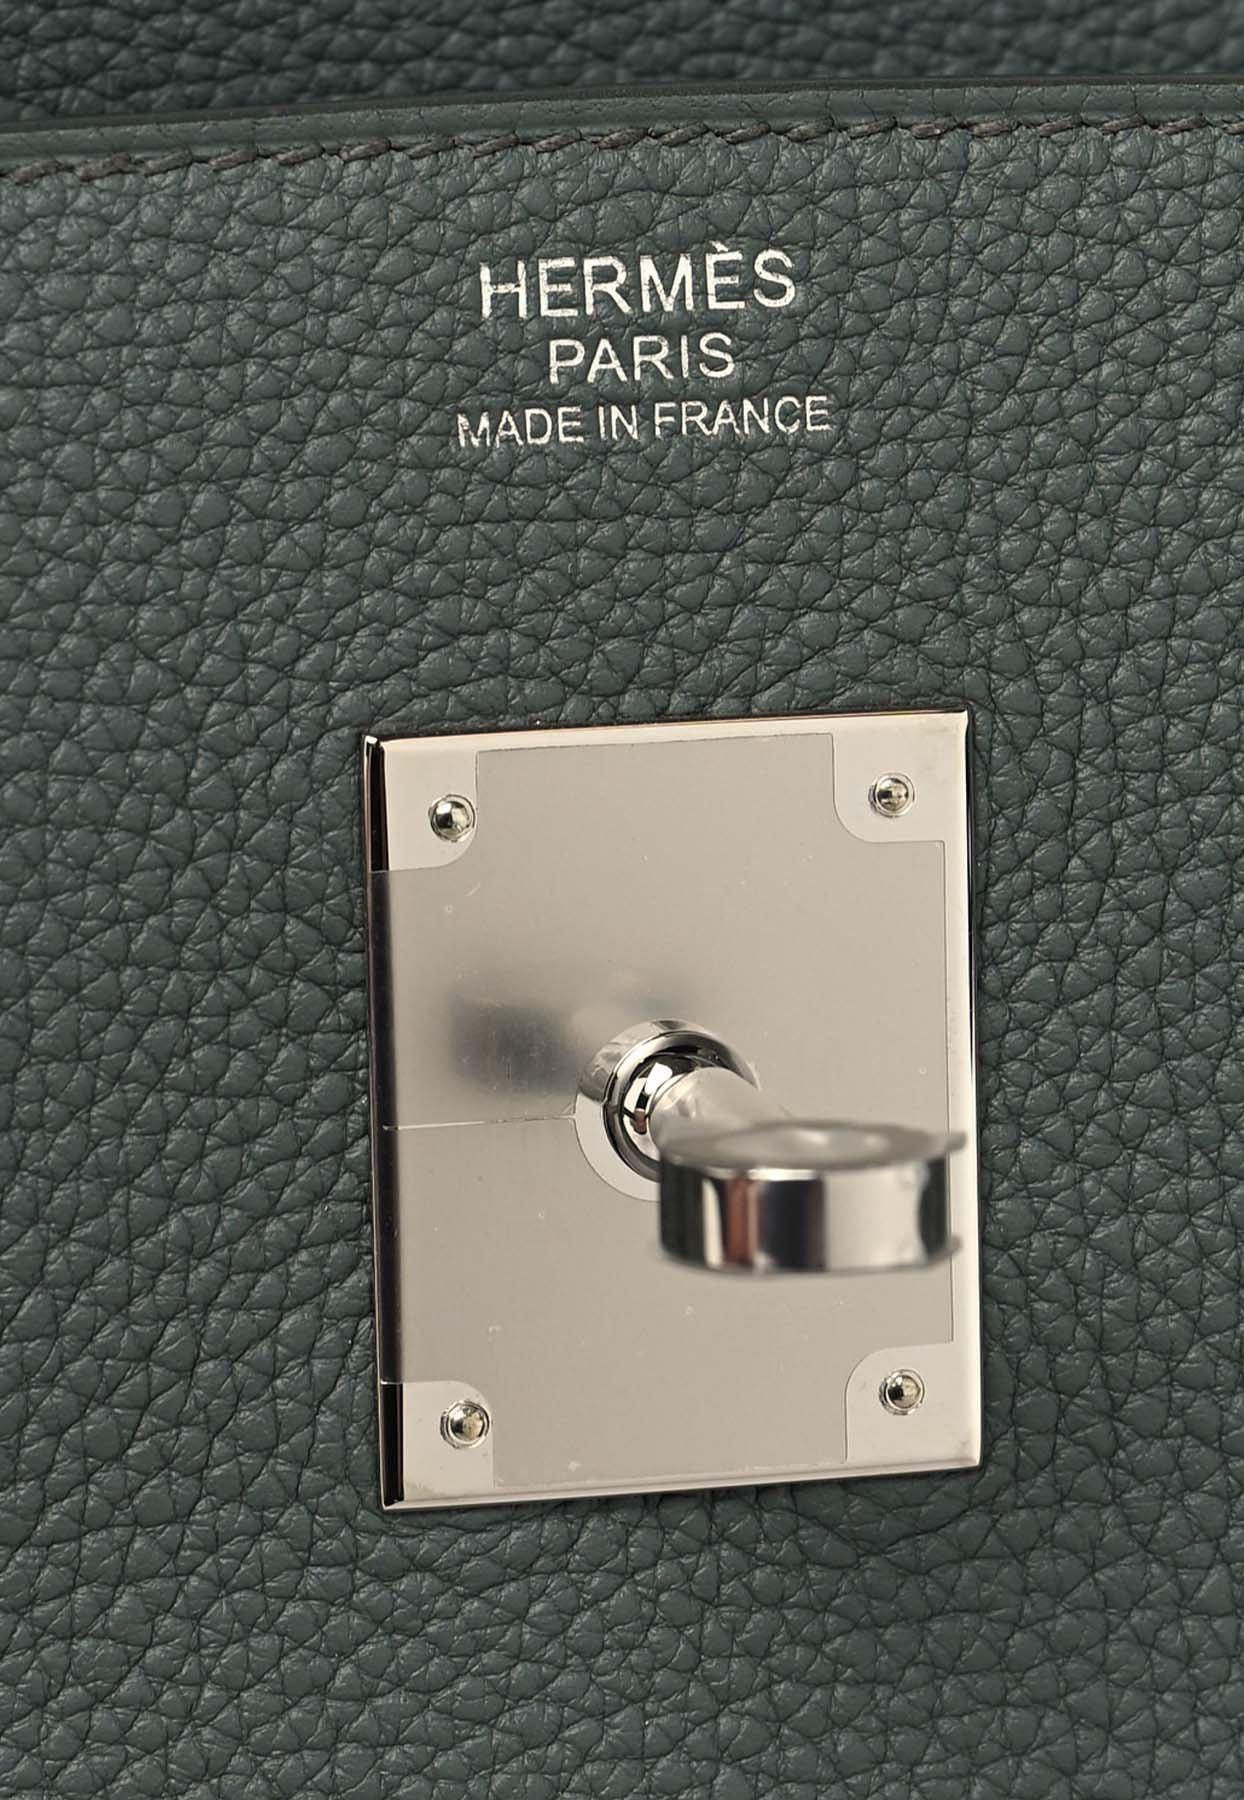 2019 Hermès Vert Amande Togo Leather Birkin 30cm